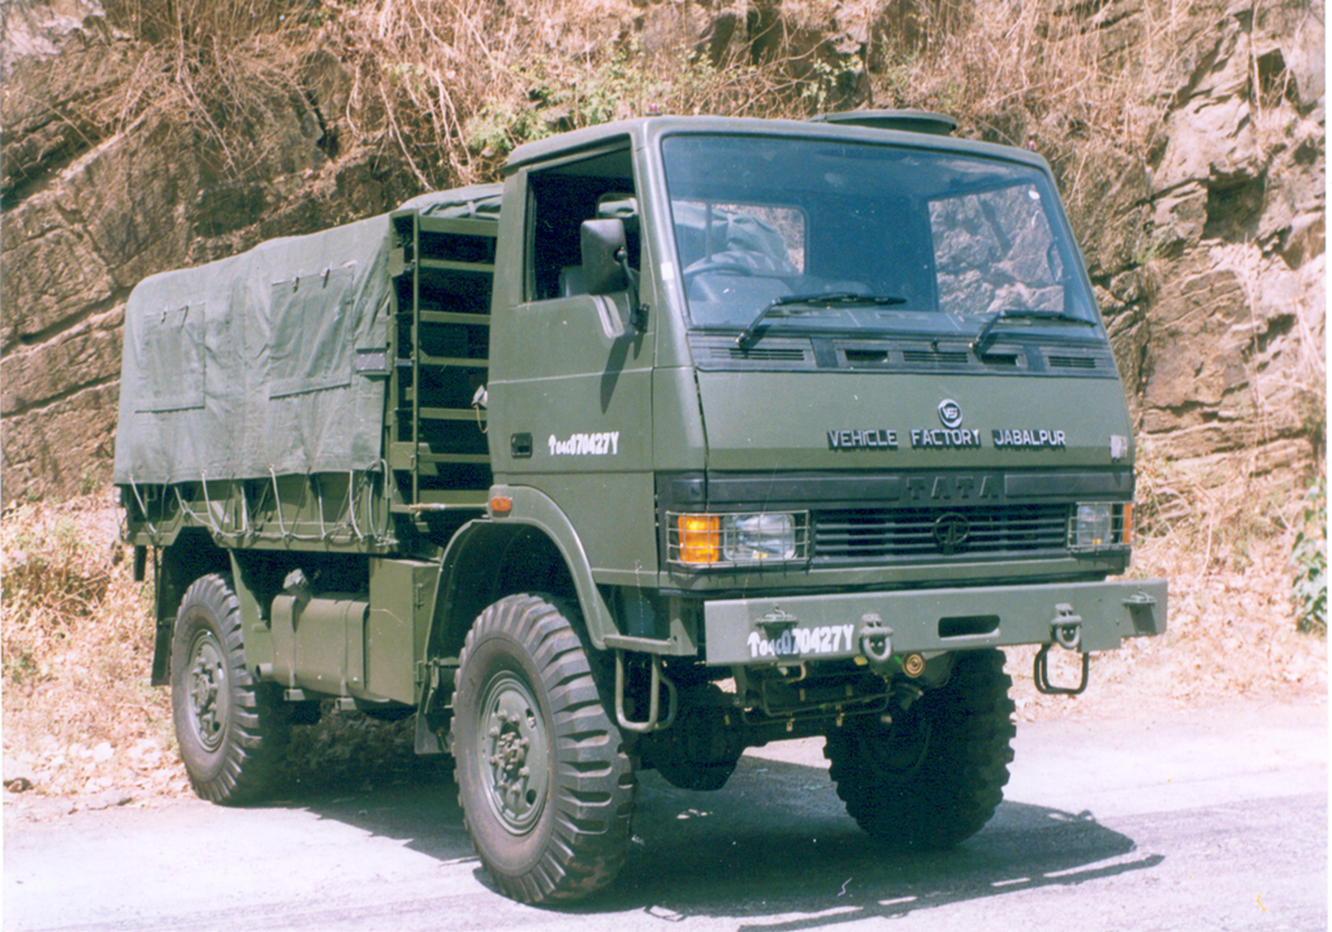 Грузовик 4 буквы. Tata LPTA 713 TC (4x4). Грузовик Tata 10x2. Ashok-Leyland 4x4. Tata Military 4x4.